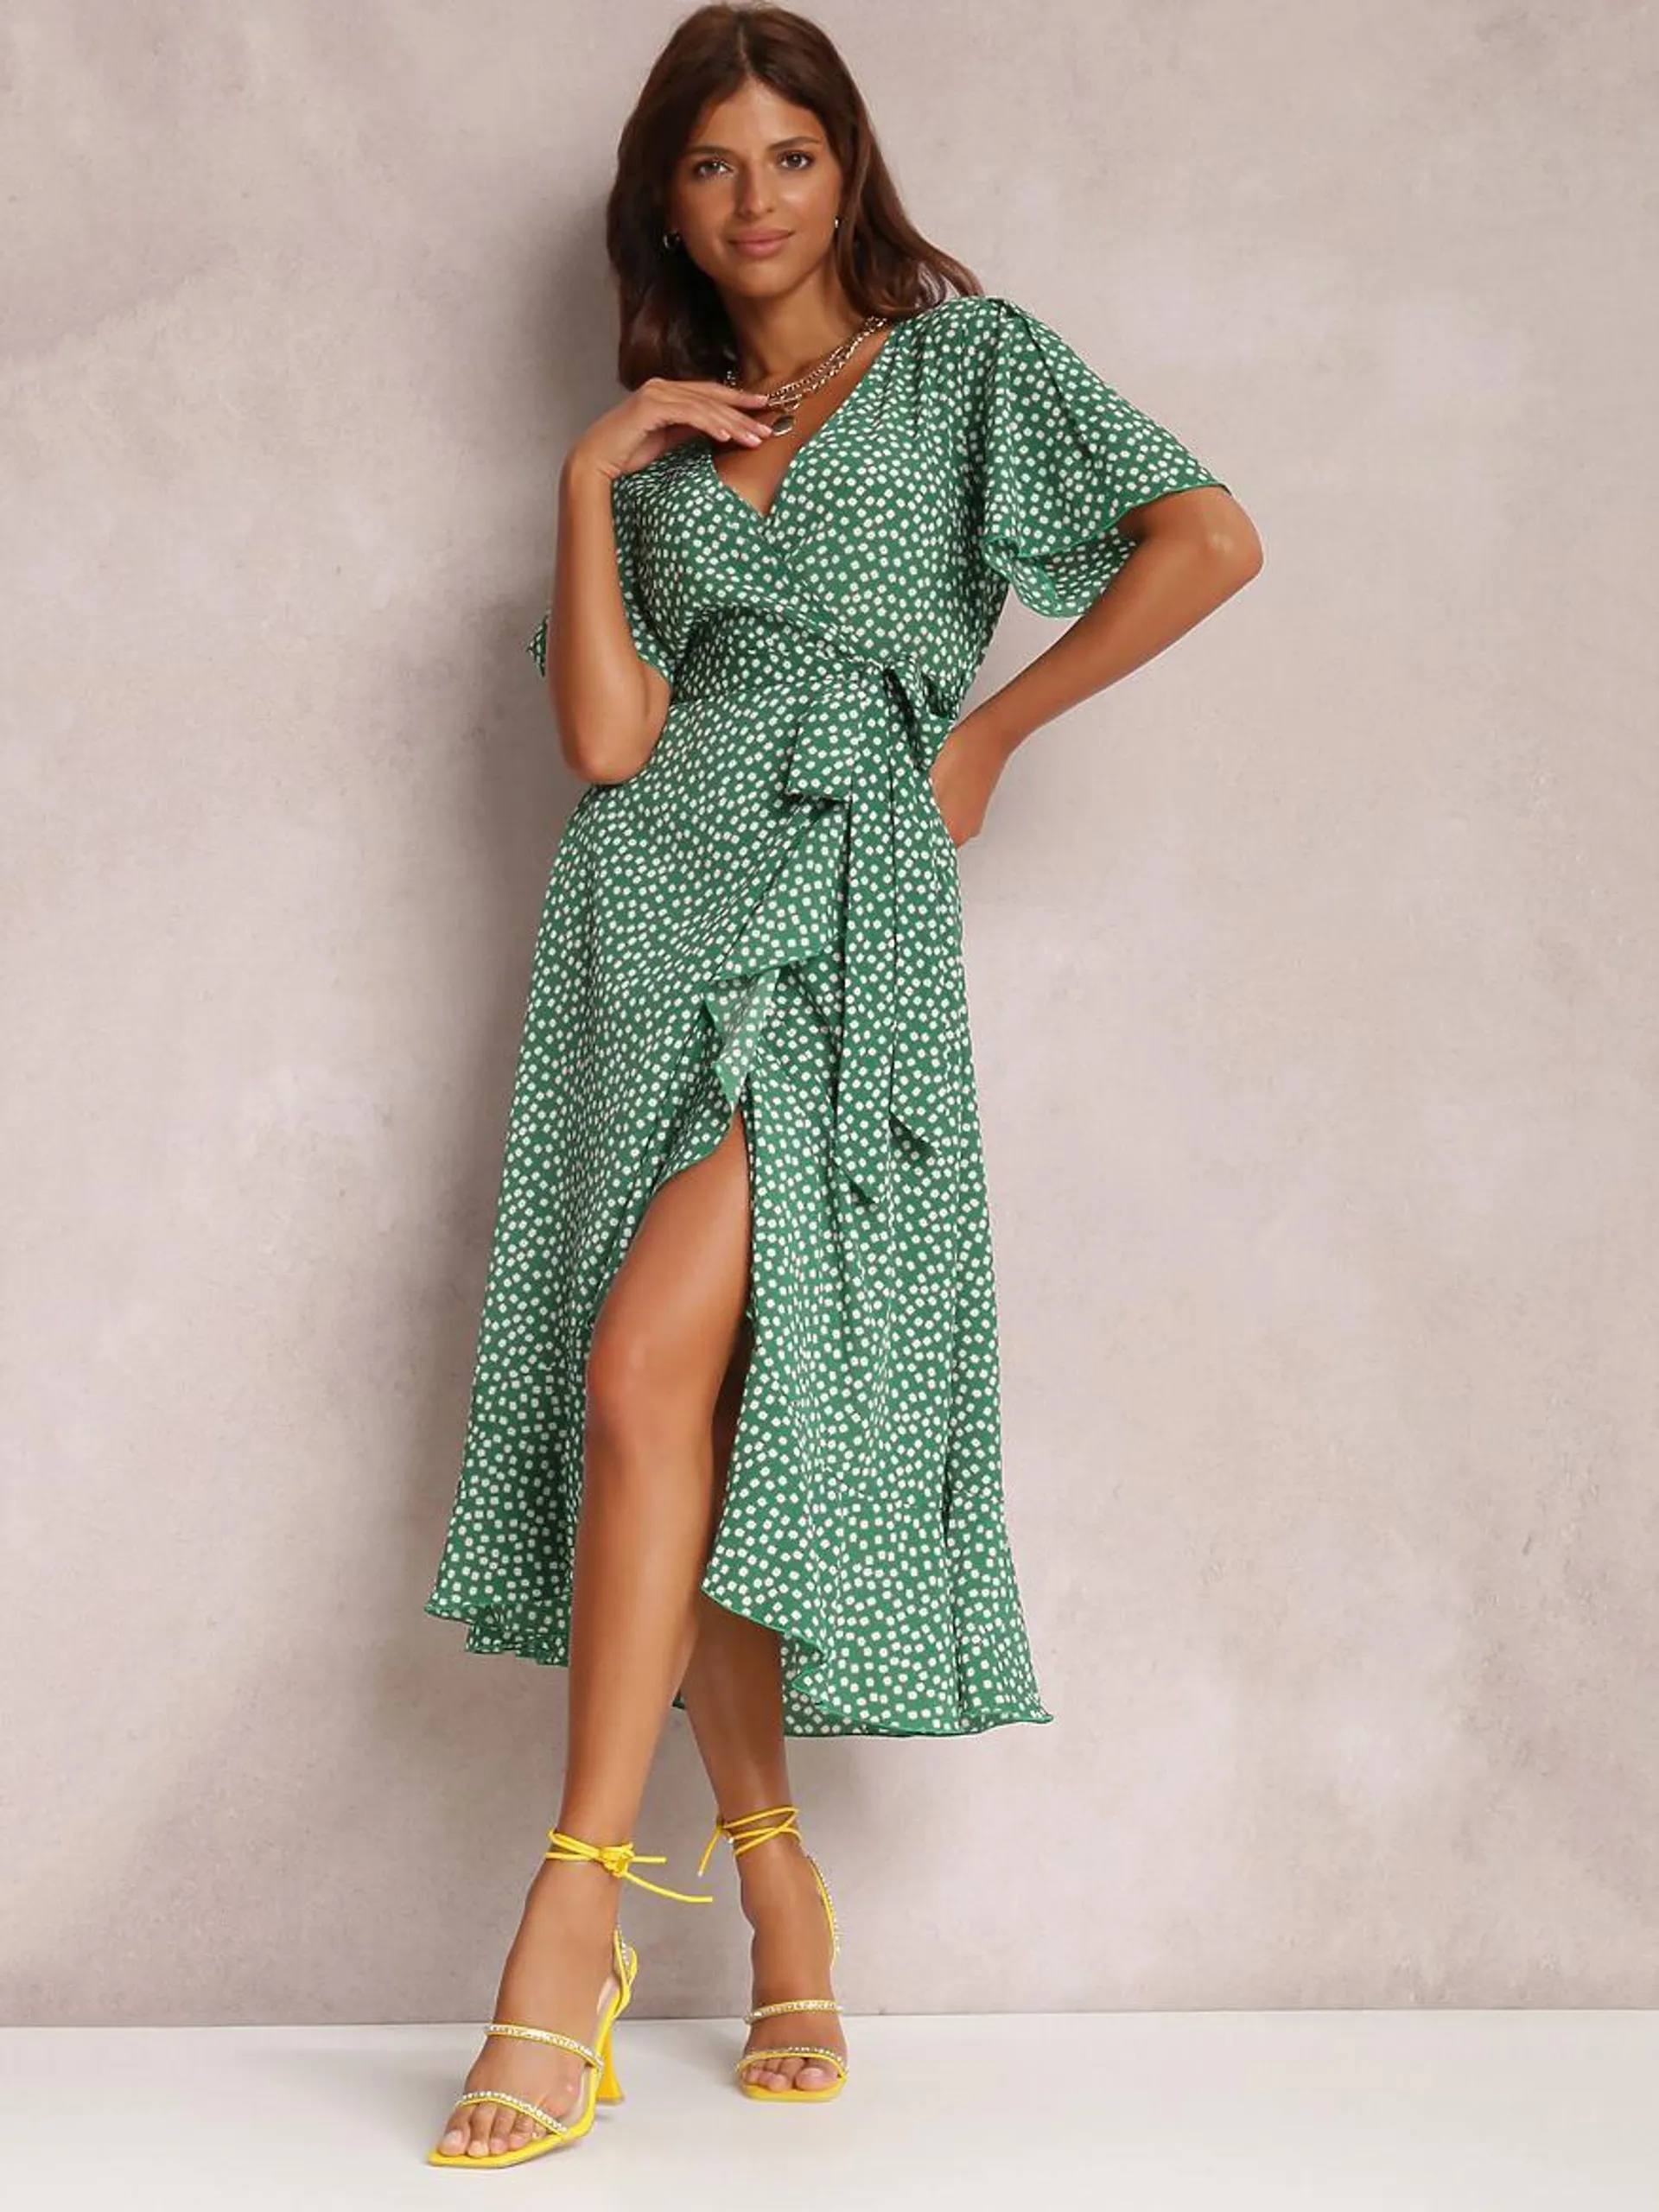 Summer Dress V-Neck Polka Dot Lace Up High-slit Mint Green Medium Beach Dress